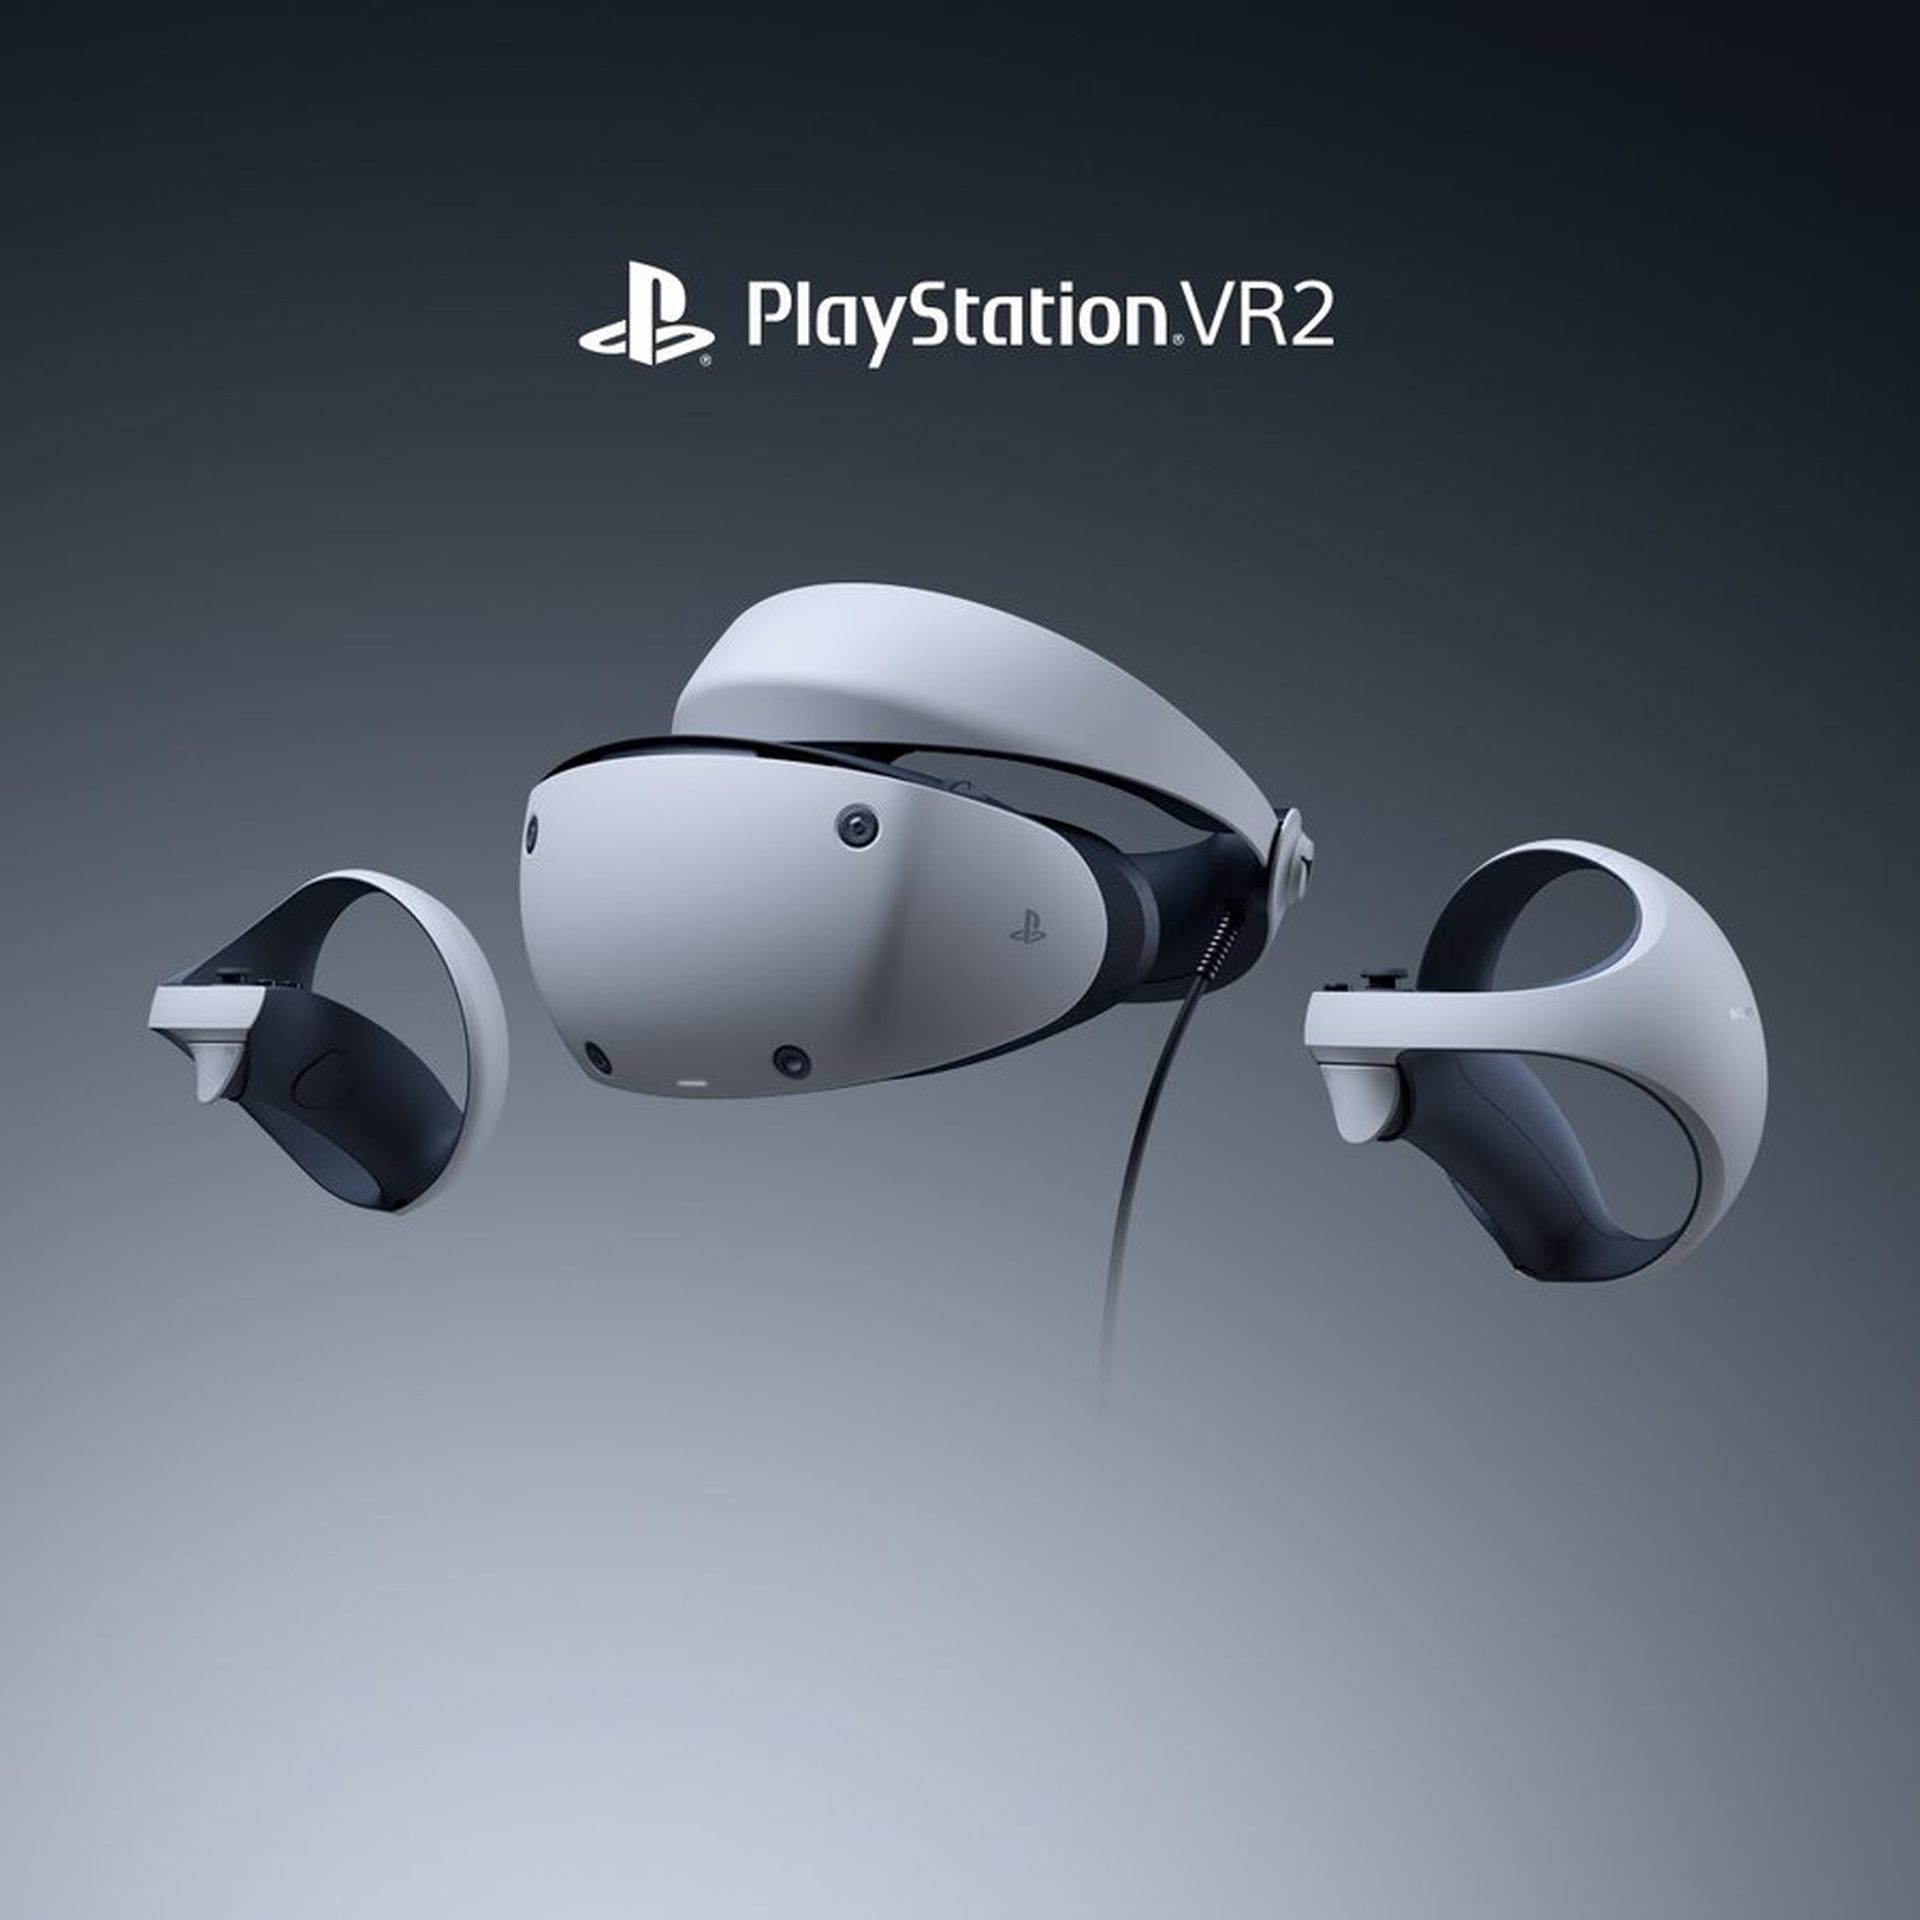 PlayStation VR2: Özellikleri, fiyatı ve çıkış tarihi